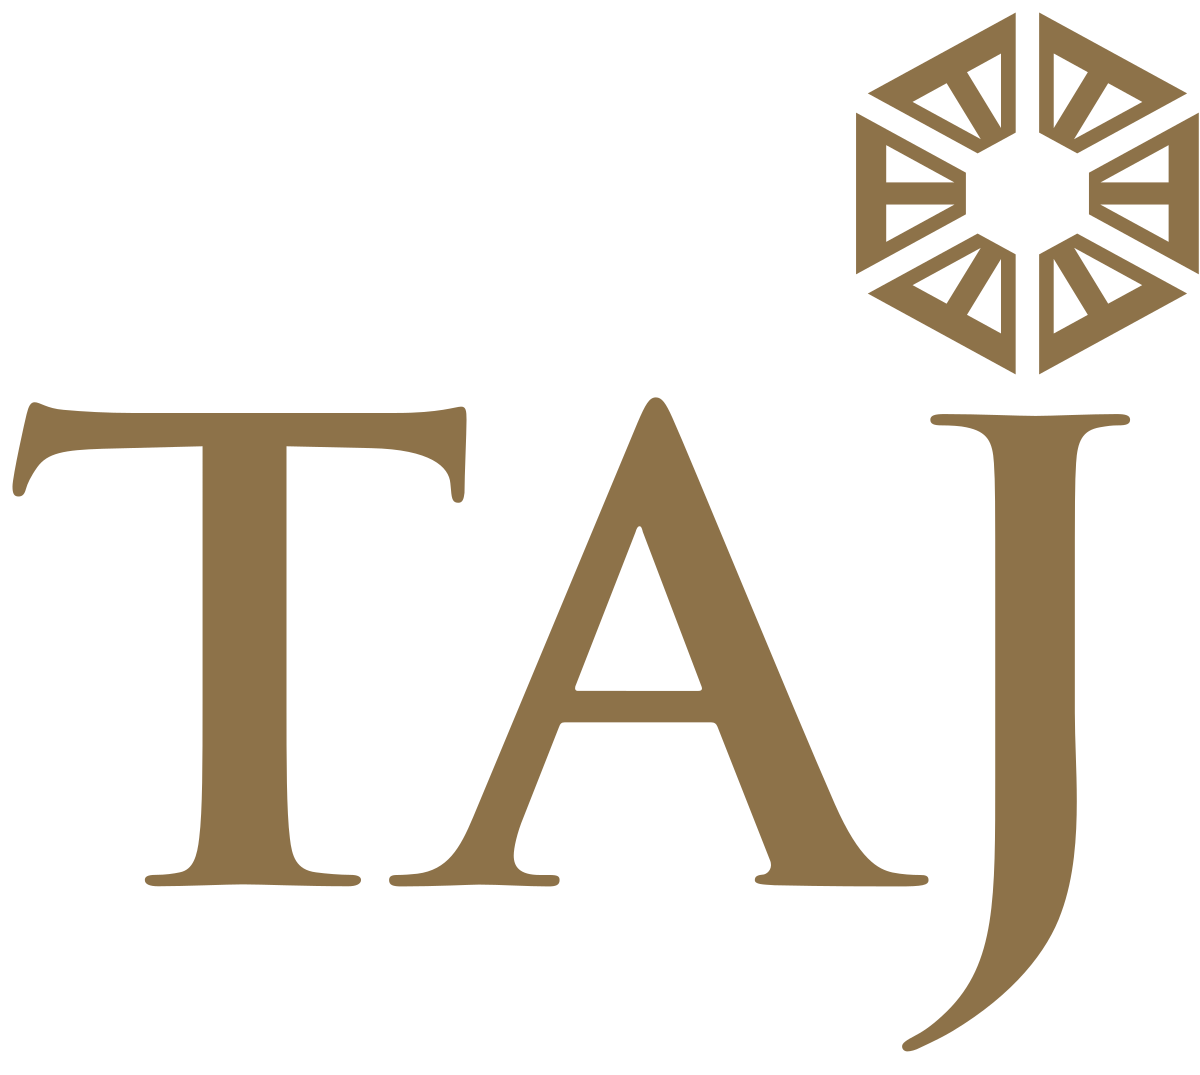 Taj Hotels Logo - Taj Hotels